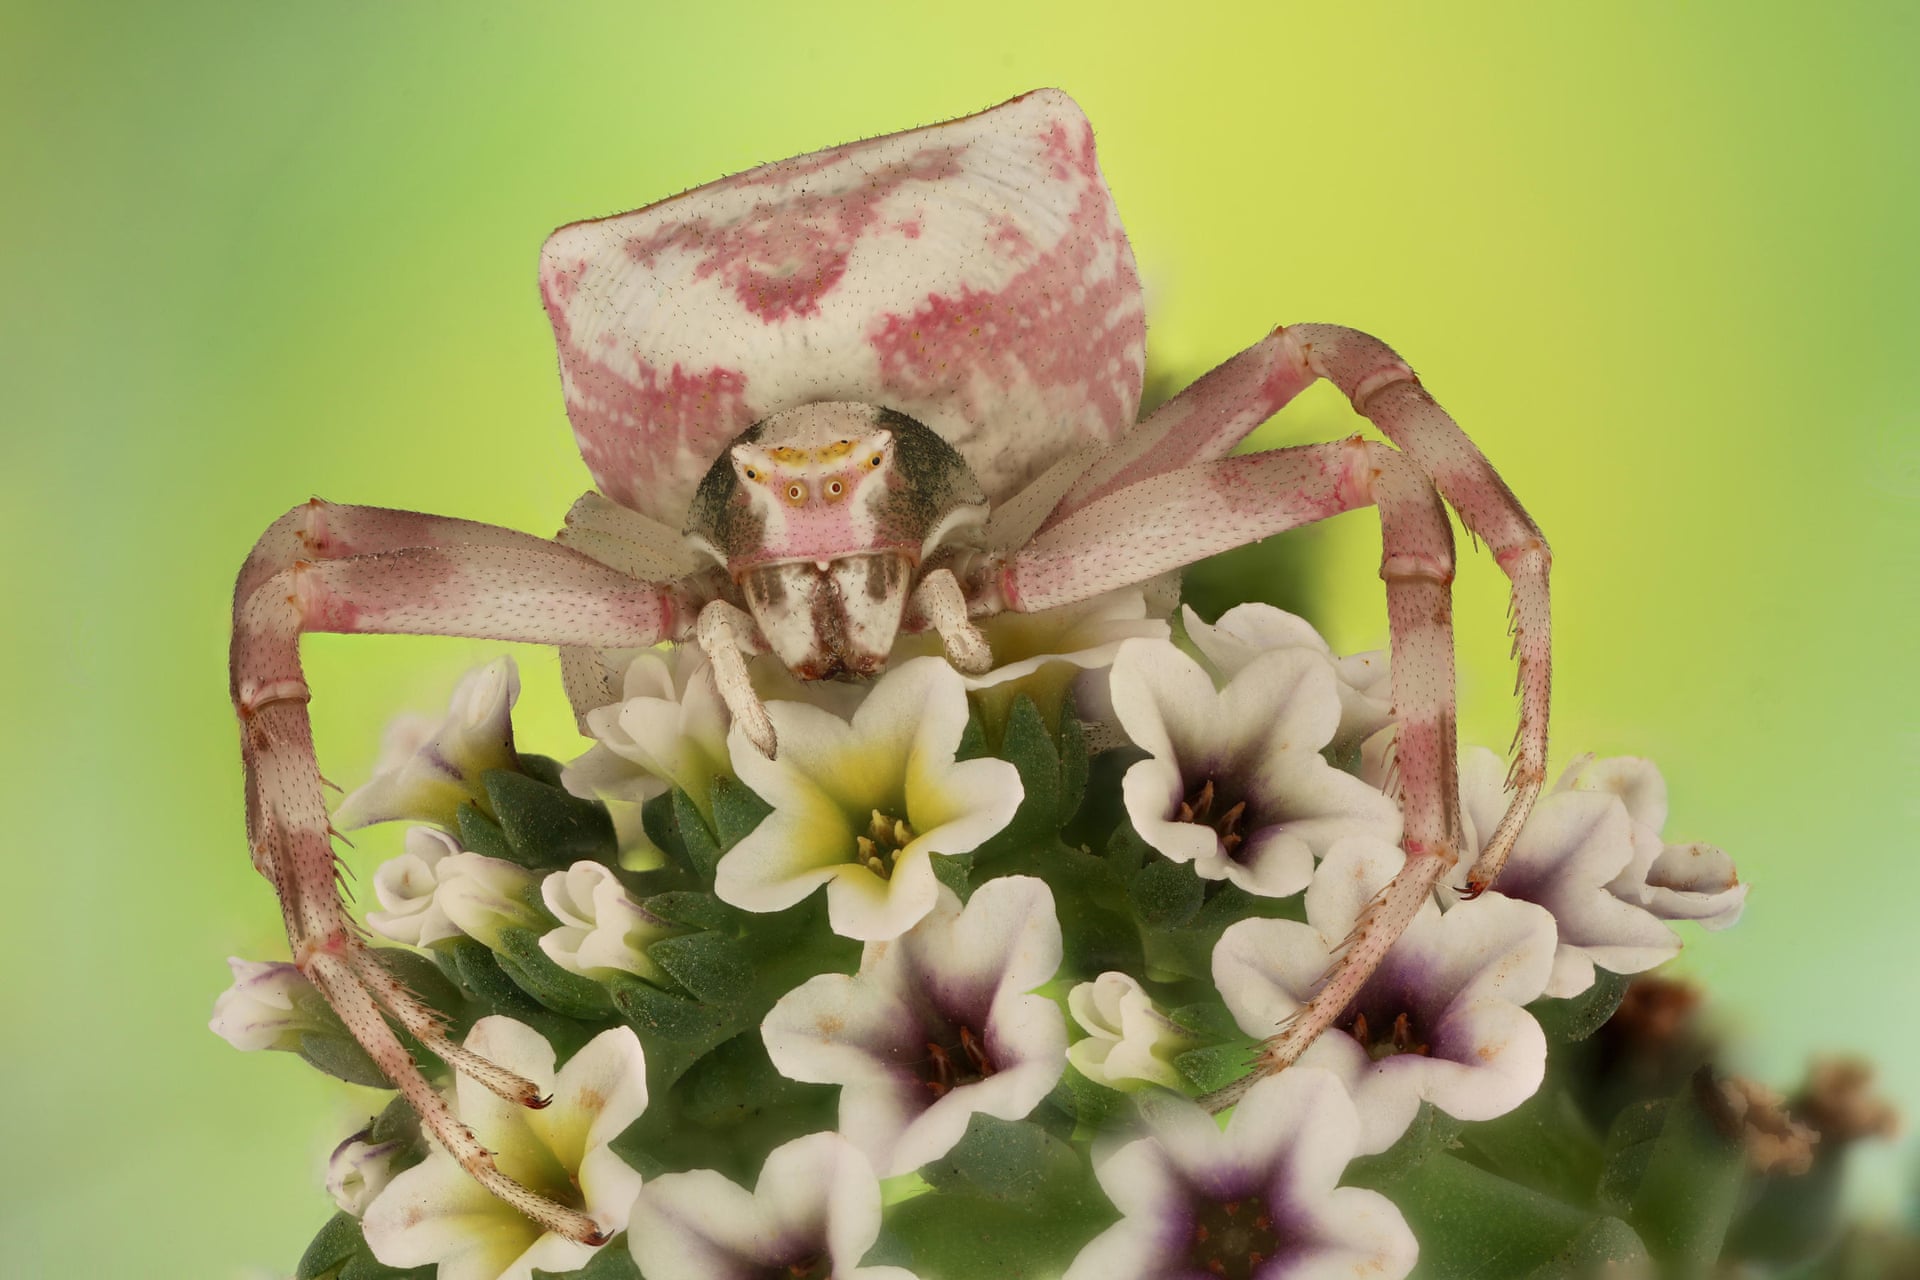 Цветочный крабовый паук - один из 27 видов крабовых пауков. Он может менять цвет своего тела, чтобы соответствовать своему окружению и прятаться от хищников. Фото: Mofeed Abu Shalwa / Luminar Bug Photography Awards